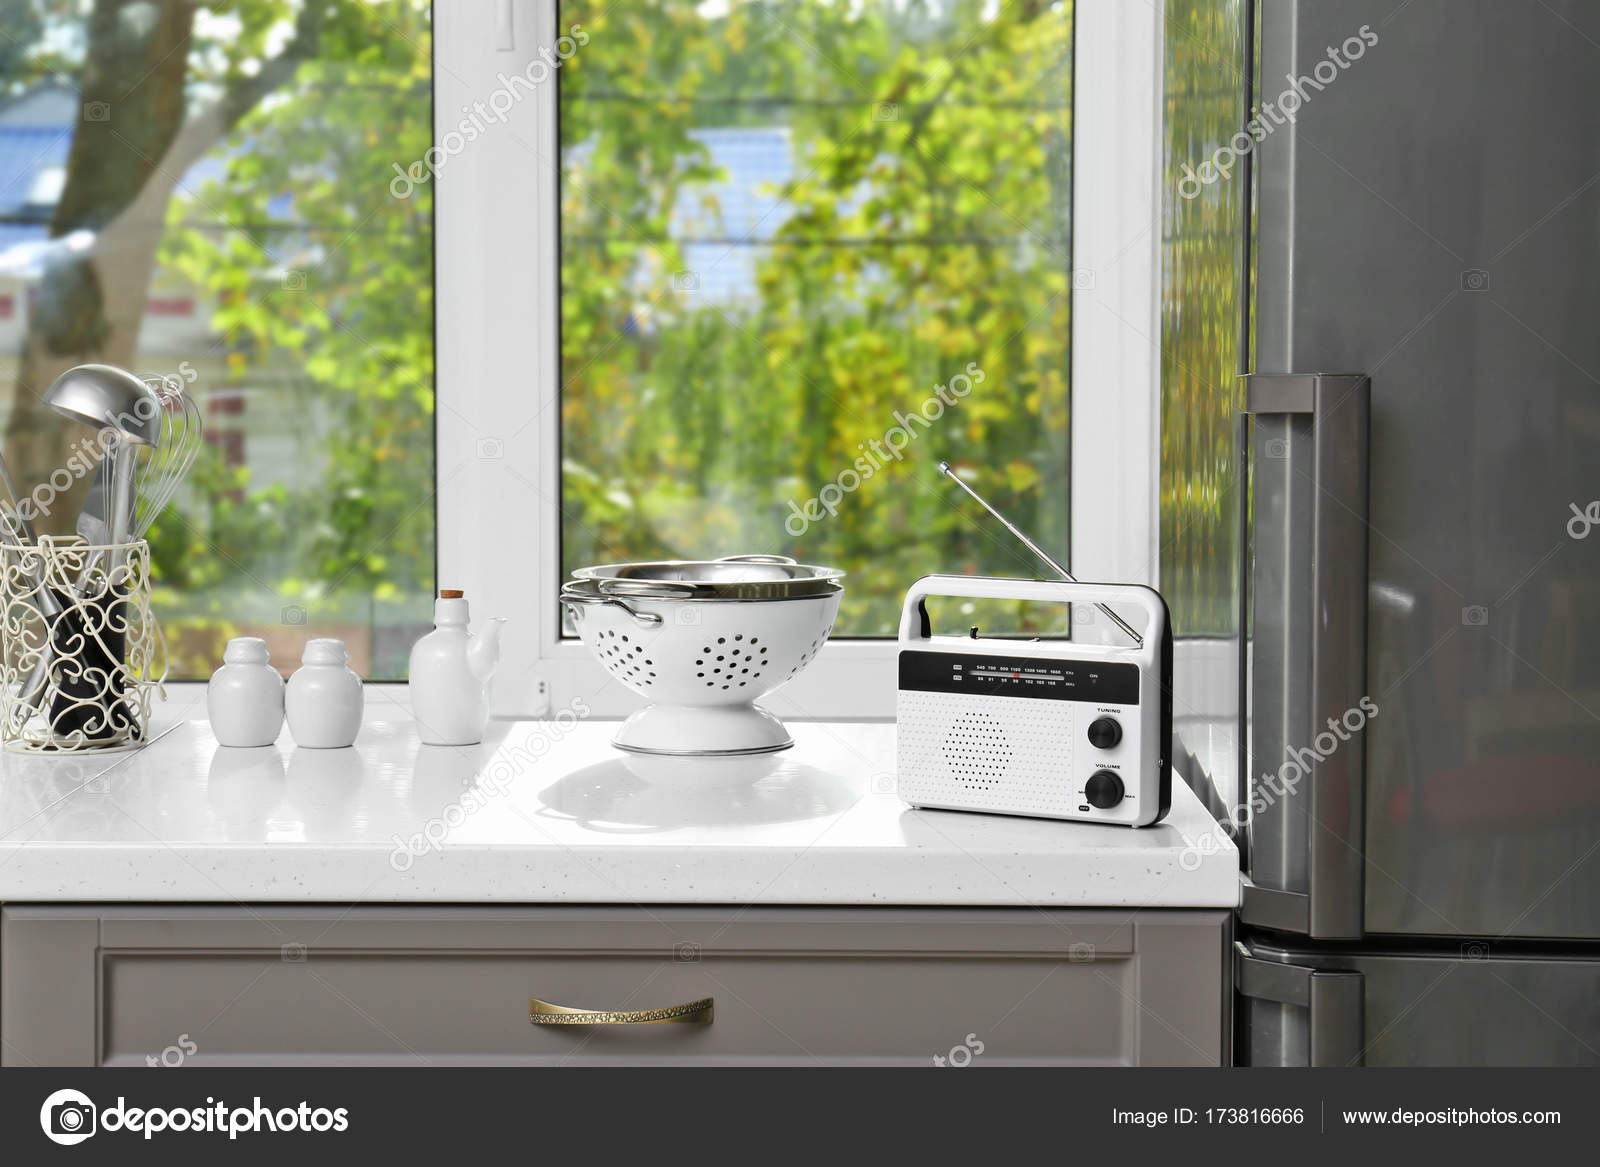 Radio moderna en la mesa en la cocina: fotografía de stock © belchonock  #173816666